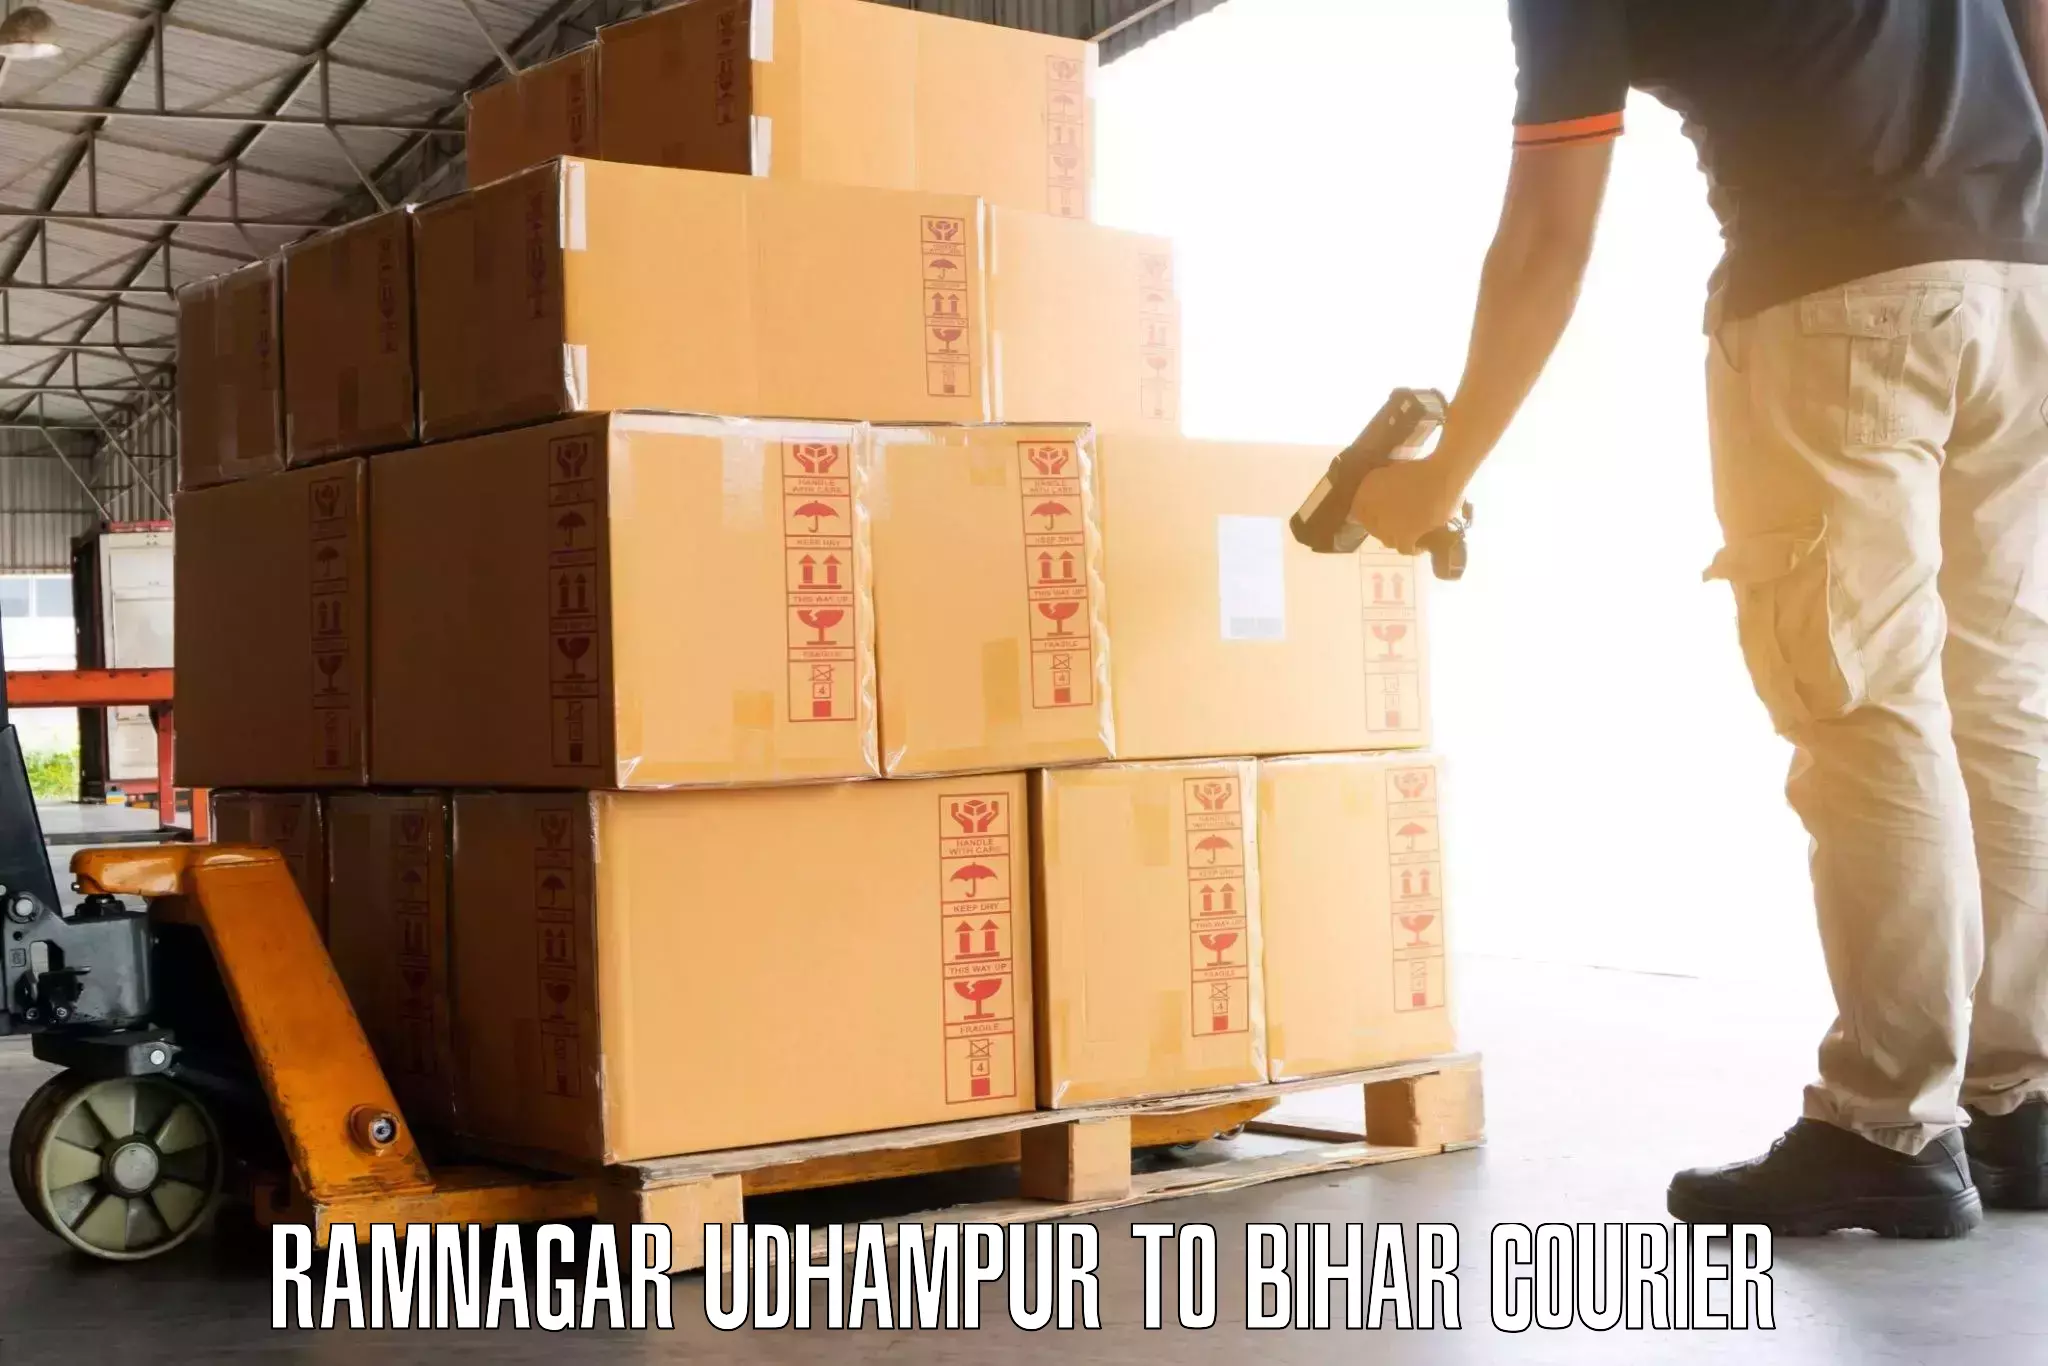 Baggage courier service Ramnagar Udhampur to Malmaliya